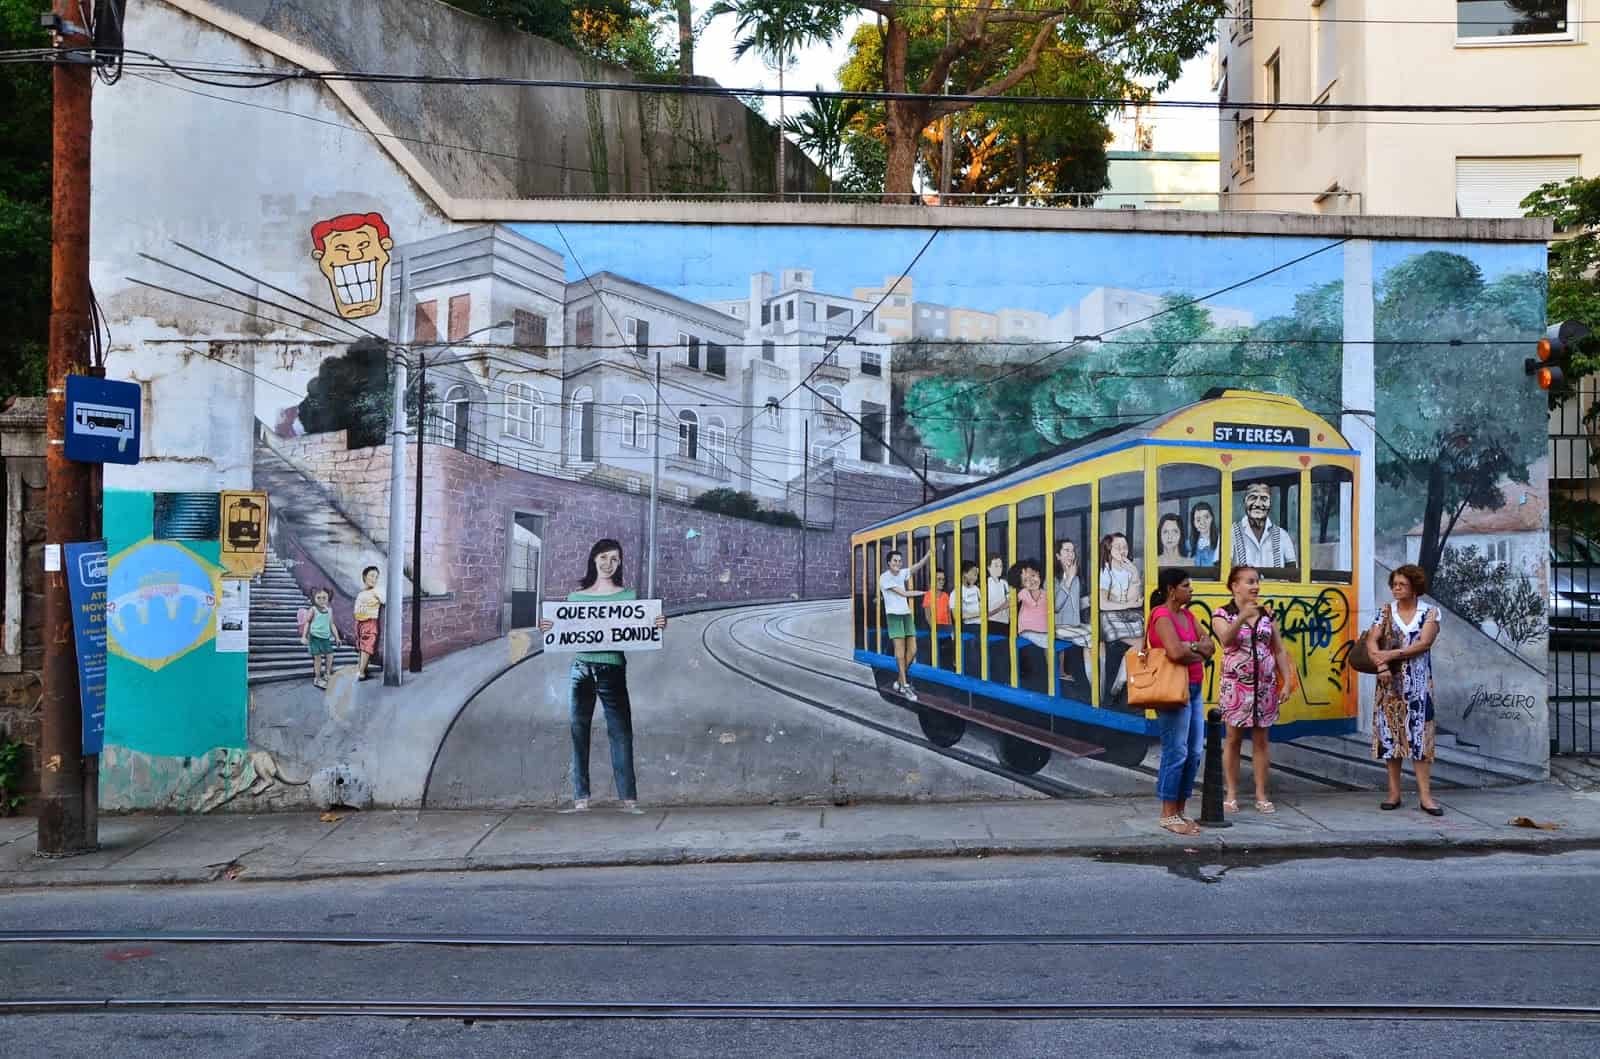 A mural in Santa Teresa in Rio de Janeiro, Brazil